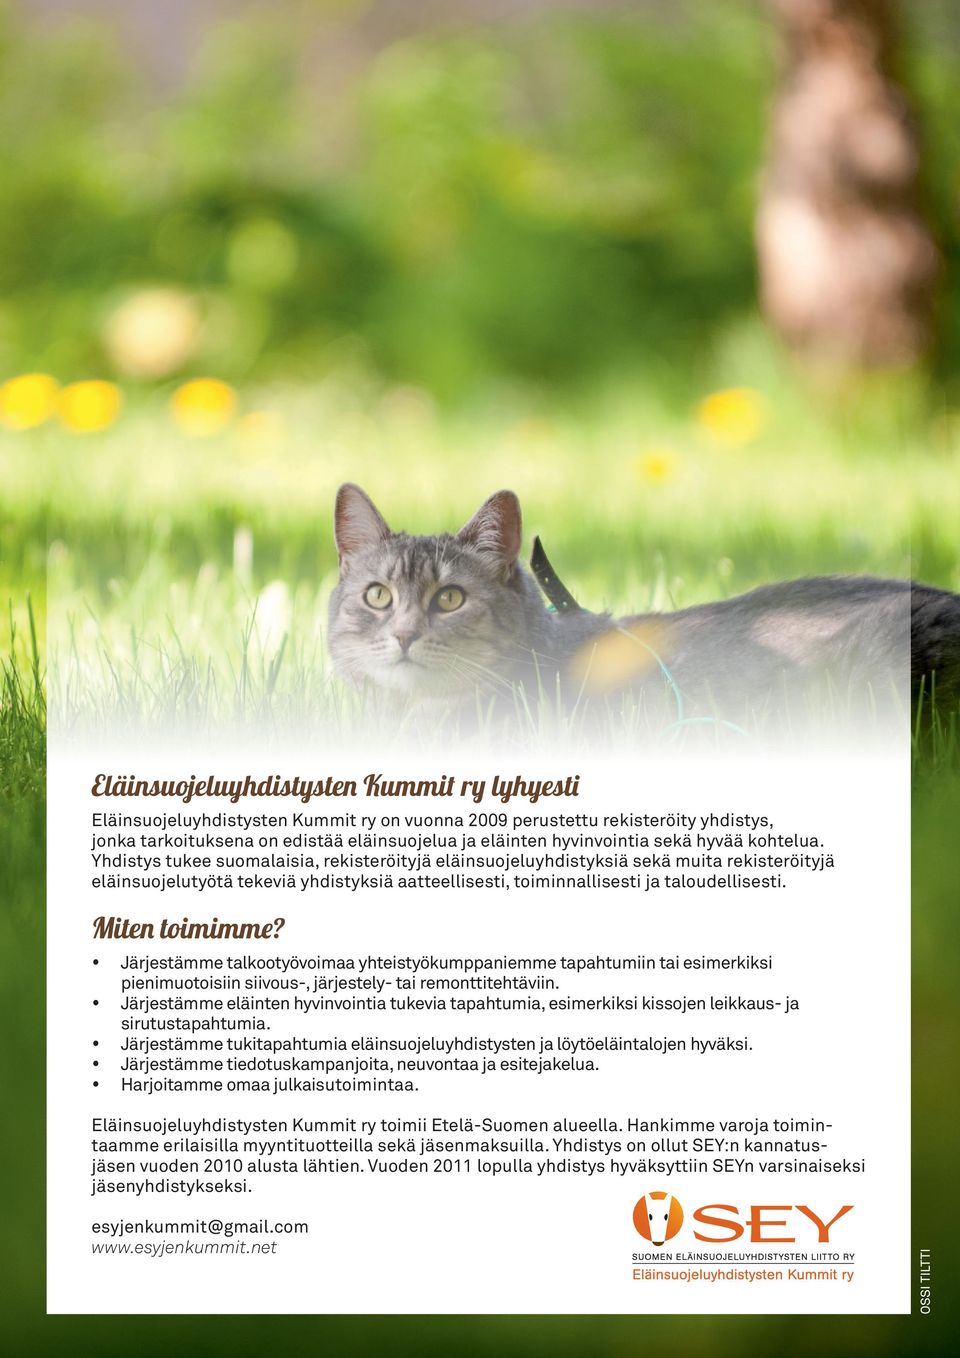 Yhdistys tukee suomalaisia, rekisteröityjä eläinsuojeluyhdistyksiä sekä muita rekisteröityjä eläinsuojelutyötä tekeviä yhdistyksiä aatteellisesti, toiminnallisesti ja taloudellisesti. Miten toimimme?